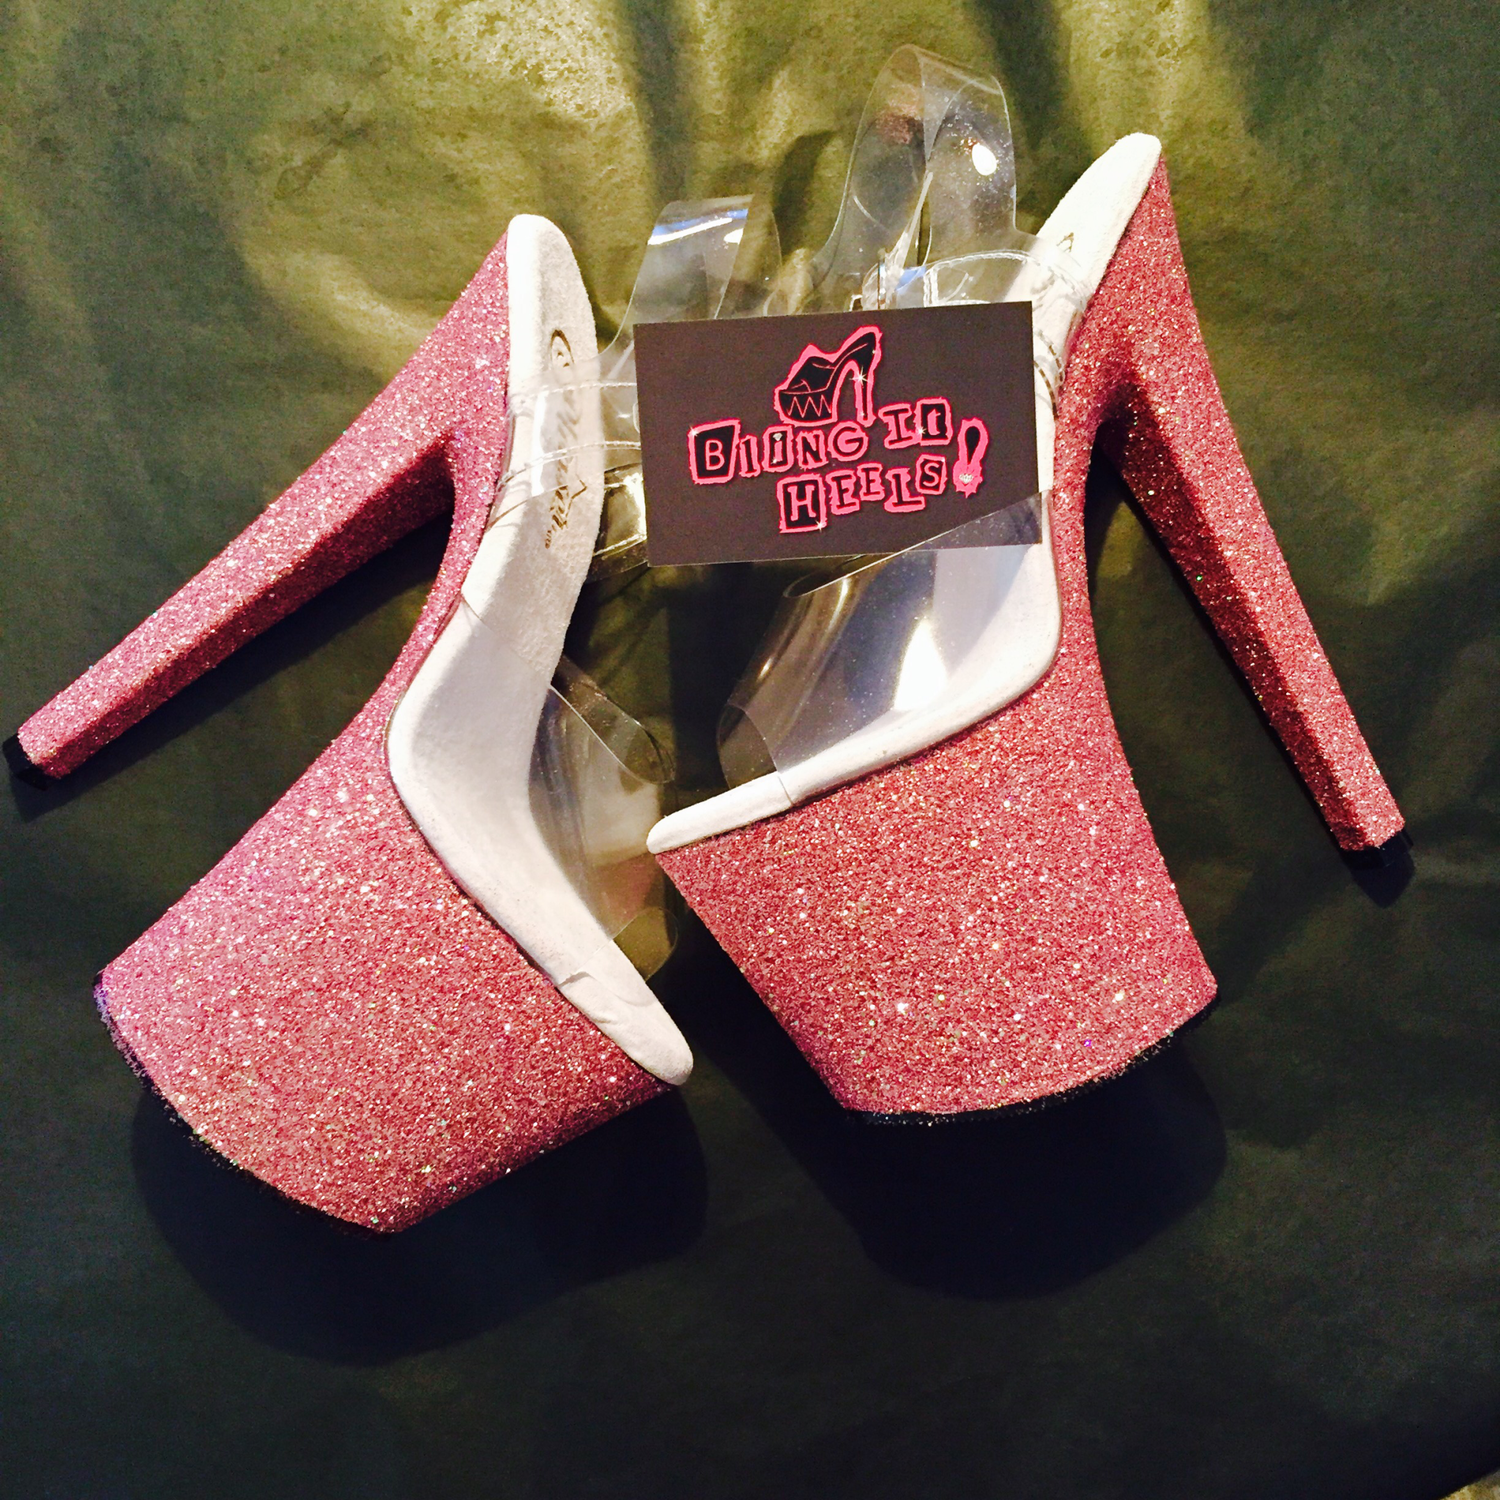 pink bling heels